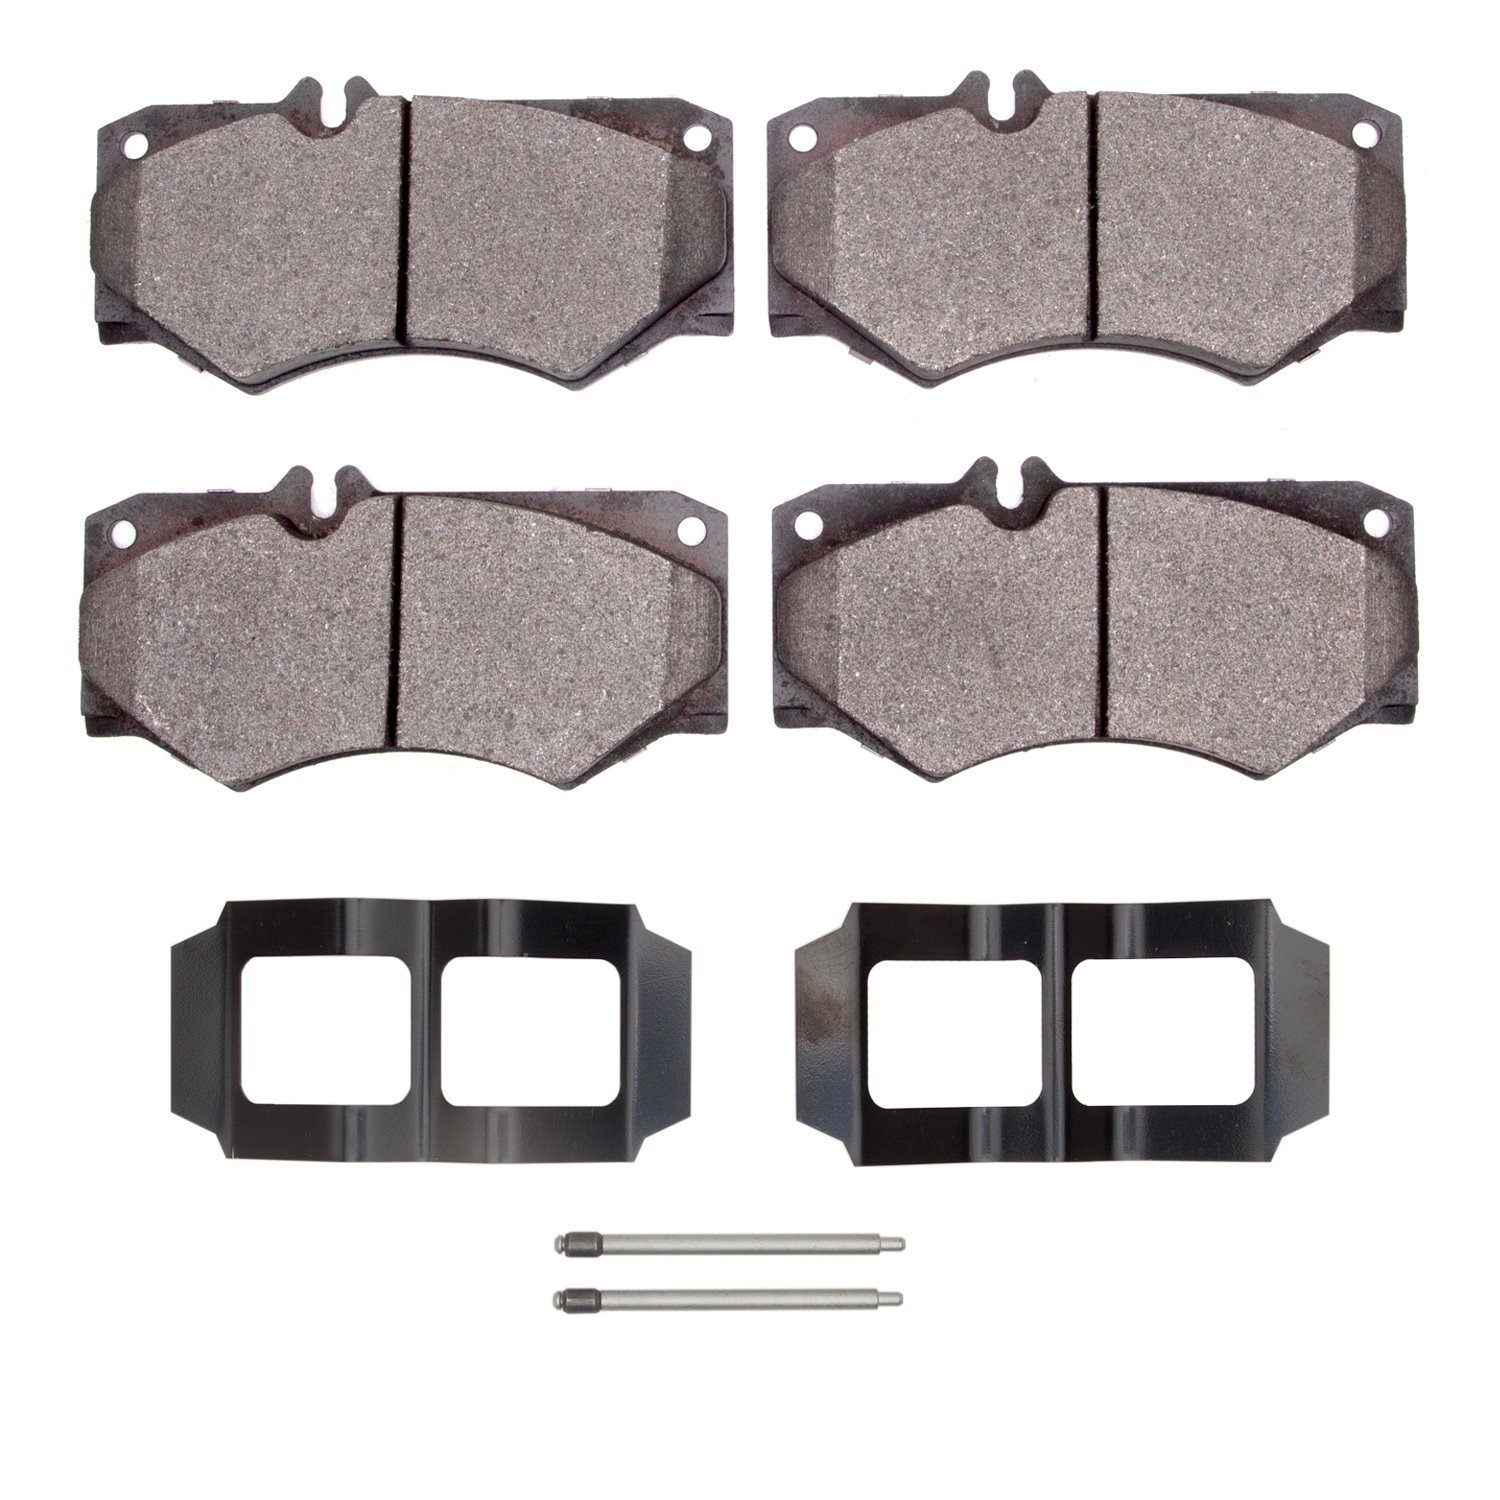 Semi-Metallic Brake Pads & Hardware Kit, 2002-2018 Mercedes-Benz, Position: Front